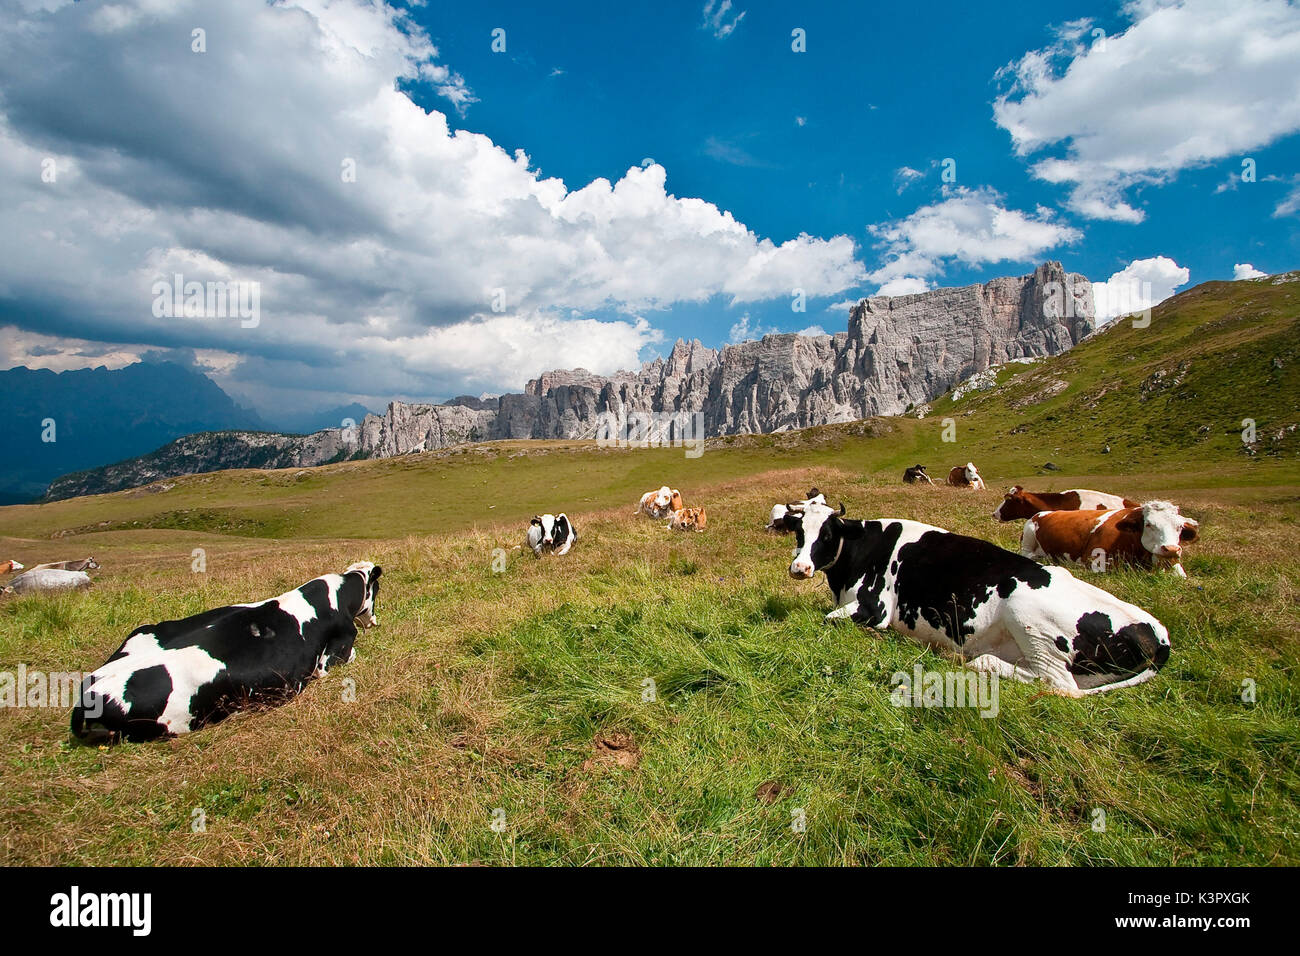 Alcune mucche frisone appoggiata dal Passo Giau. Holstein Frisoni (spesso abbreviato come holsteins) sono una razza di bestiame oggi noto come il mondo con la più elevata produzione gli animali da latte - Dolomiti Trentino Alto Adige Italia Europa Foto Stock